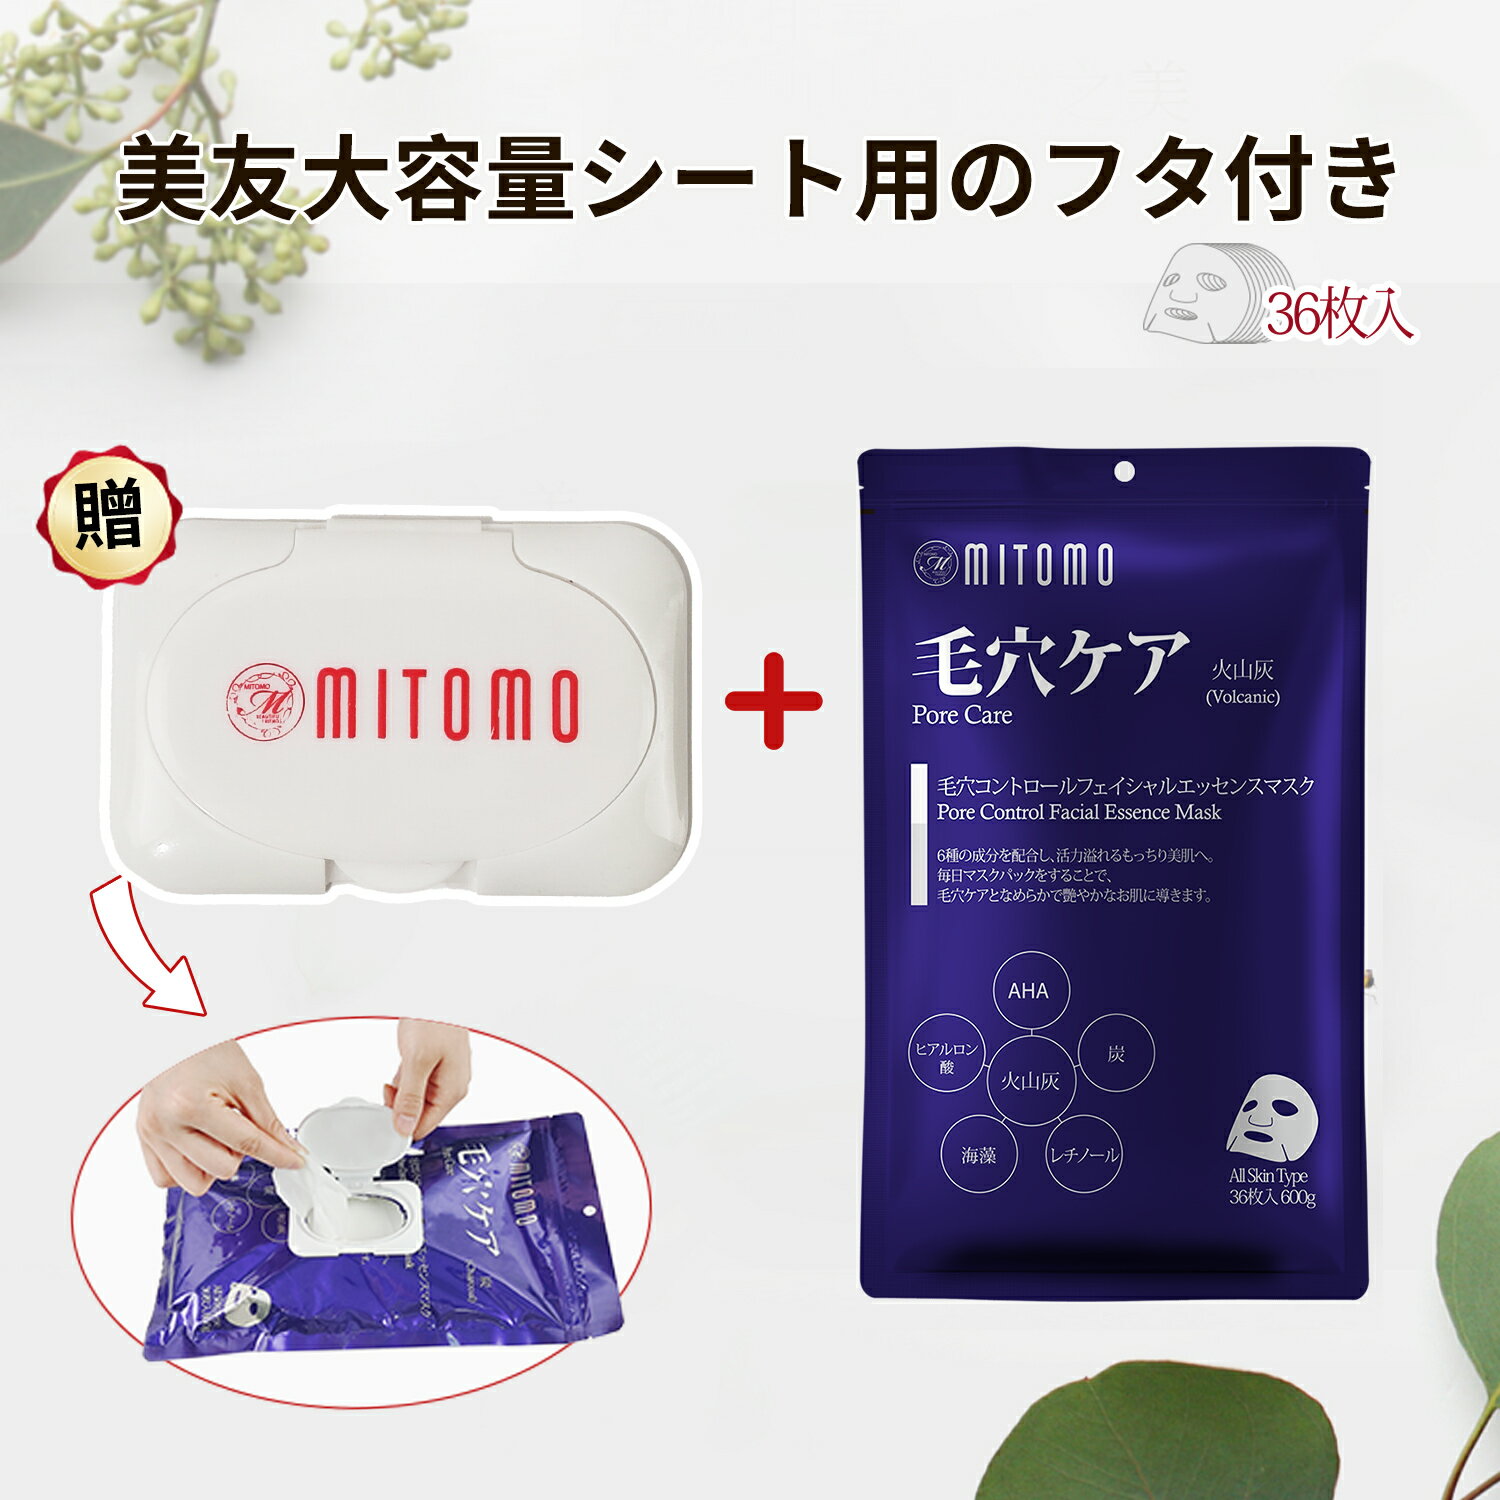 【美友】日本製シートマスク36枚入り/栄養豊富な成分で肌の潤いを与える/自然派成分の力で肌を健康に【MT101-E-3-CAP】- 新しい美容技術を取り入れた製品で 美しさを引き出すパートナー[MTSA00…